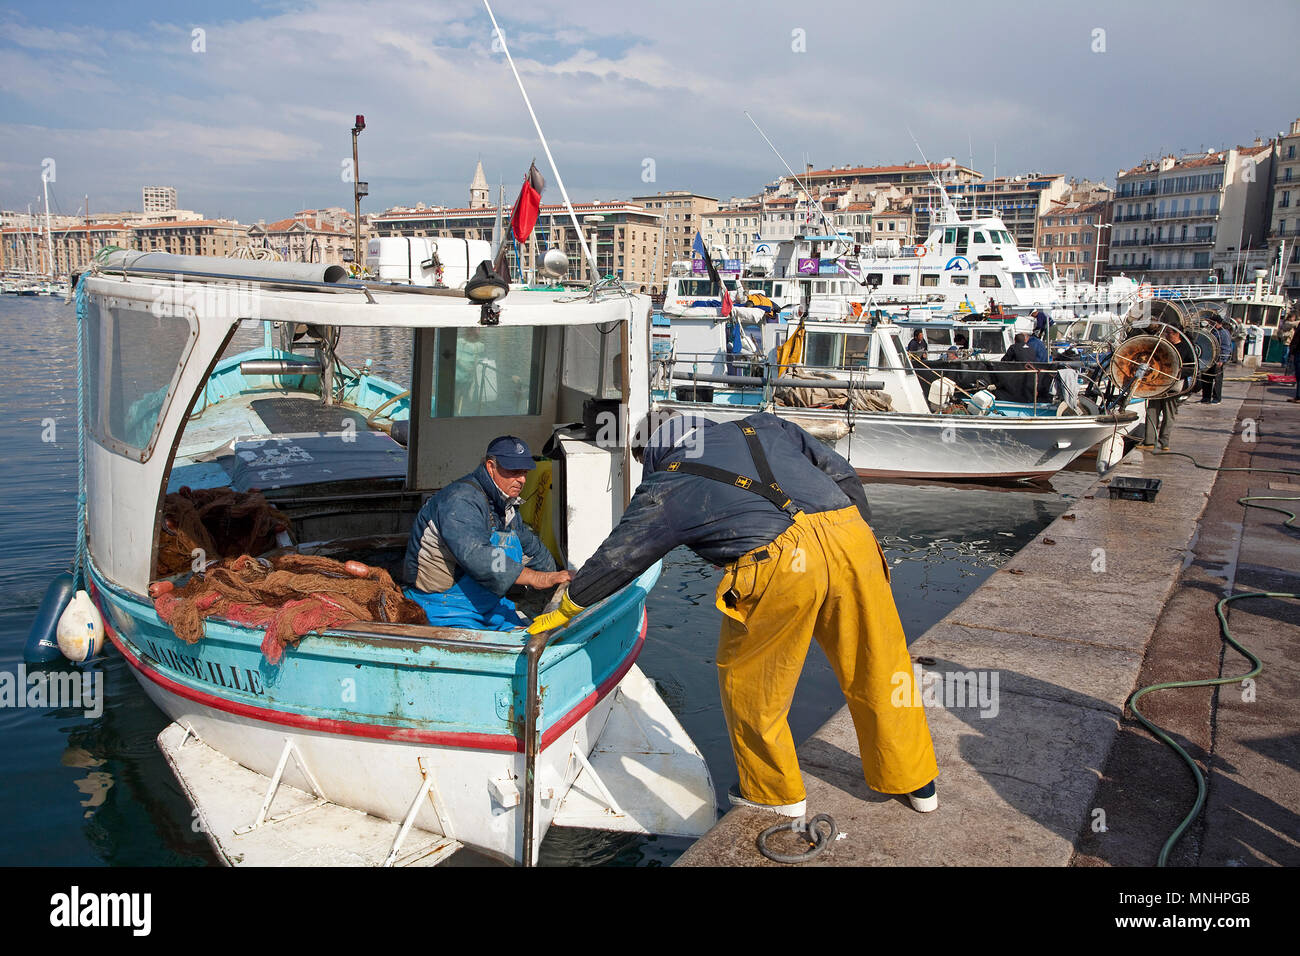 Fischer am Hafen Vieux Port, Marseille, Bouches-du-Rhône der Region Provence-Alpes-Côte d'Azur, Südfrankreich, Frankreich, Europa Stockfoto